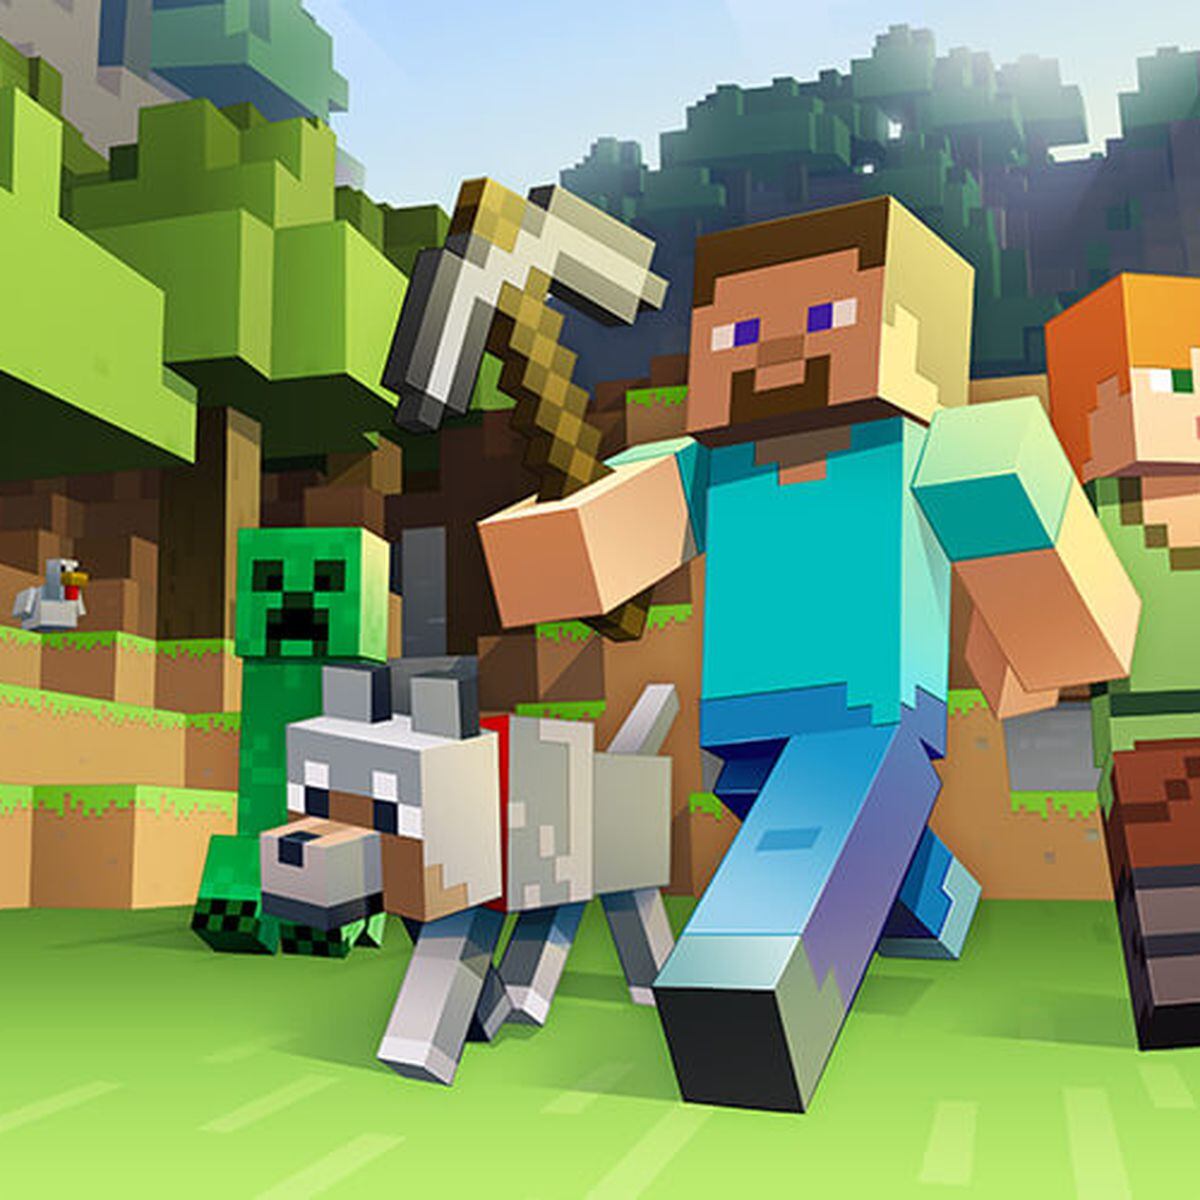 Minecraft é o segundo jogo mais vendido em toda a indústria de